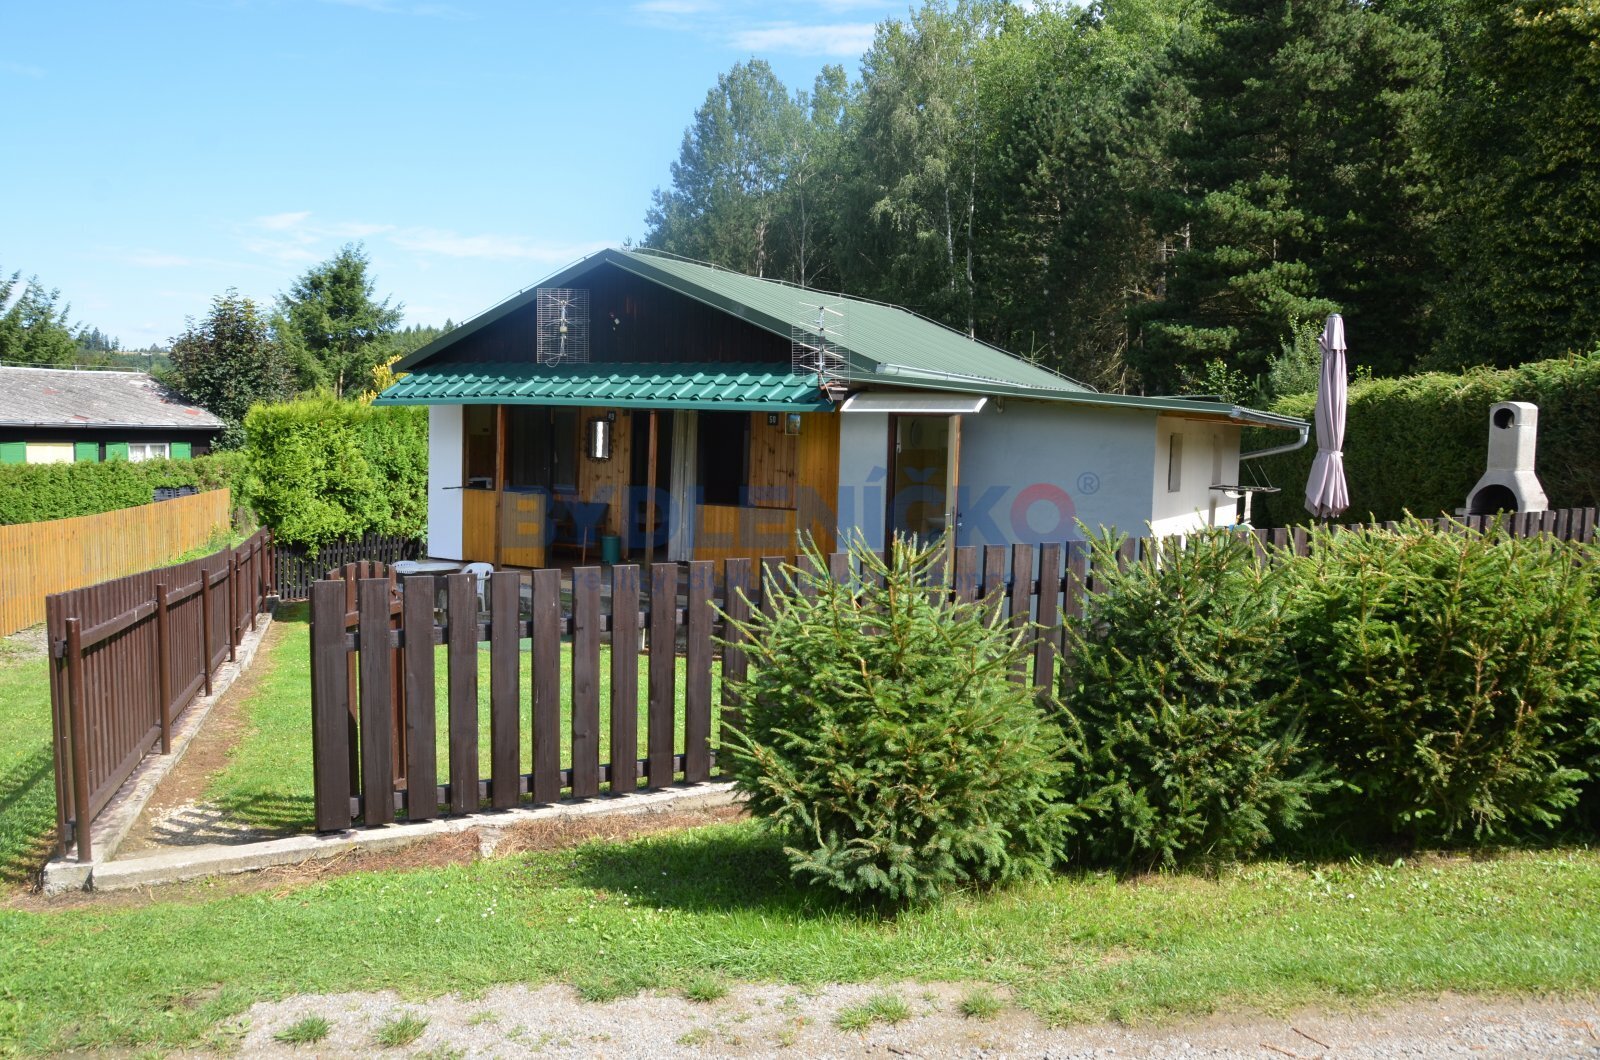 Prodej chaty 66 m2 u řeky s výhledem na hrad, Dobronice u Bechyně, okres Tábor